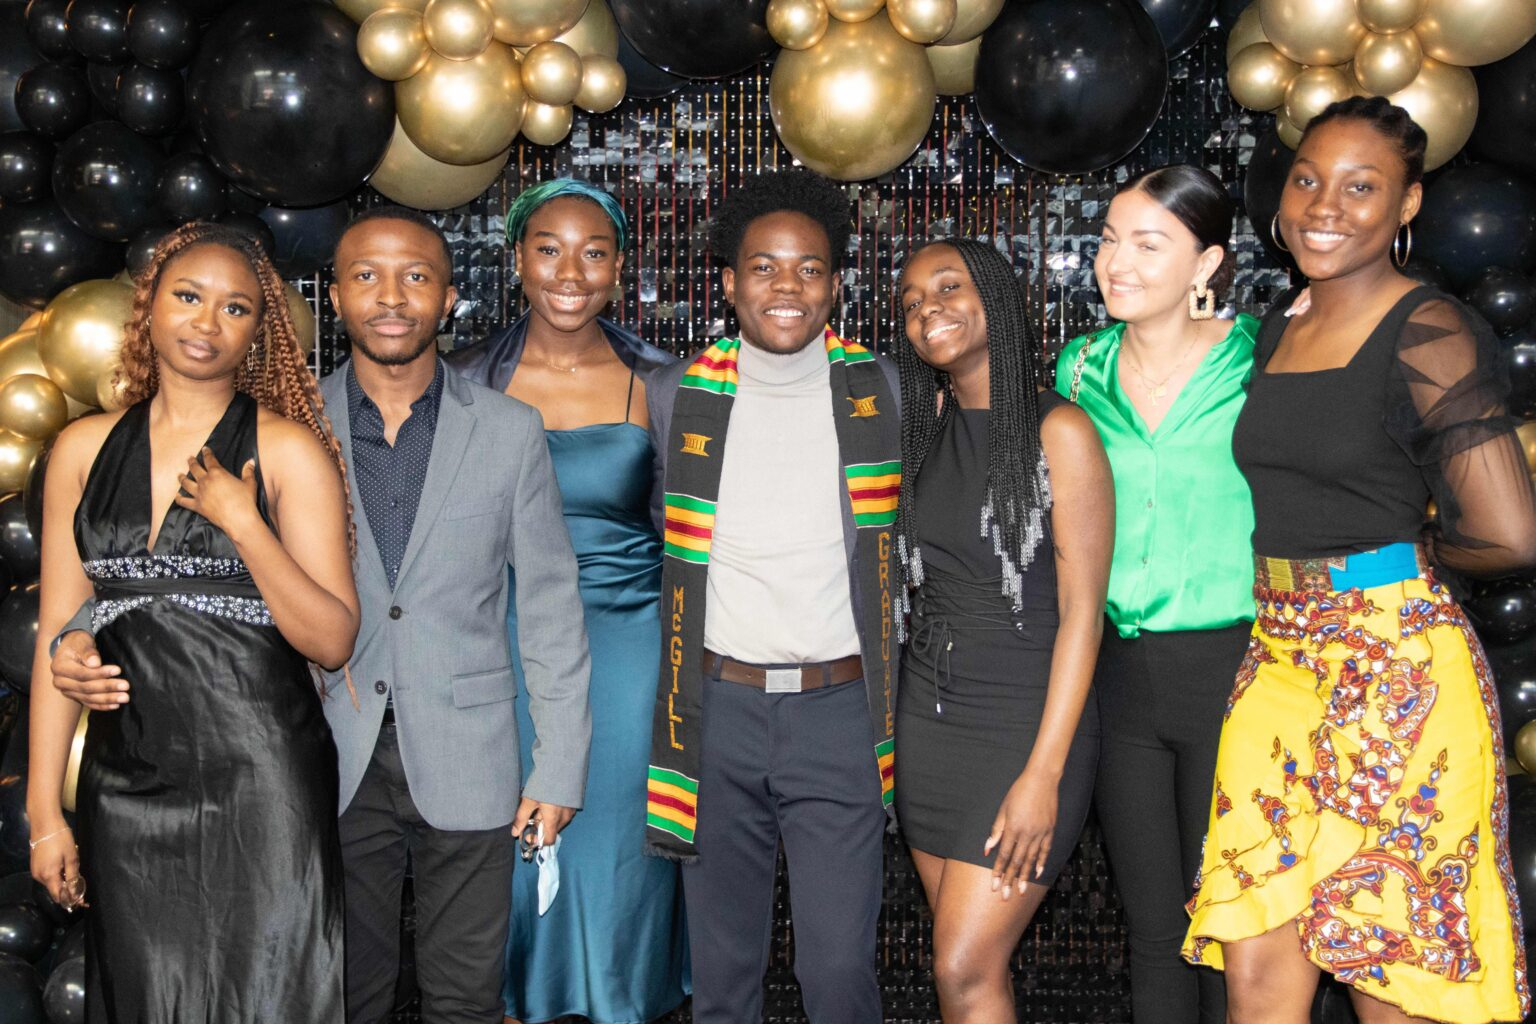 Students celebrating Black Grad 2022